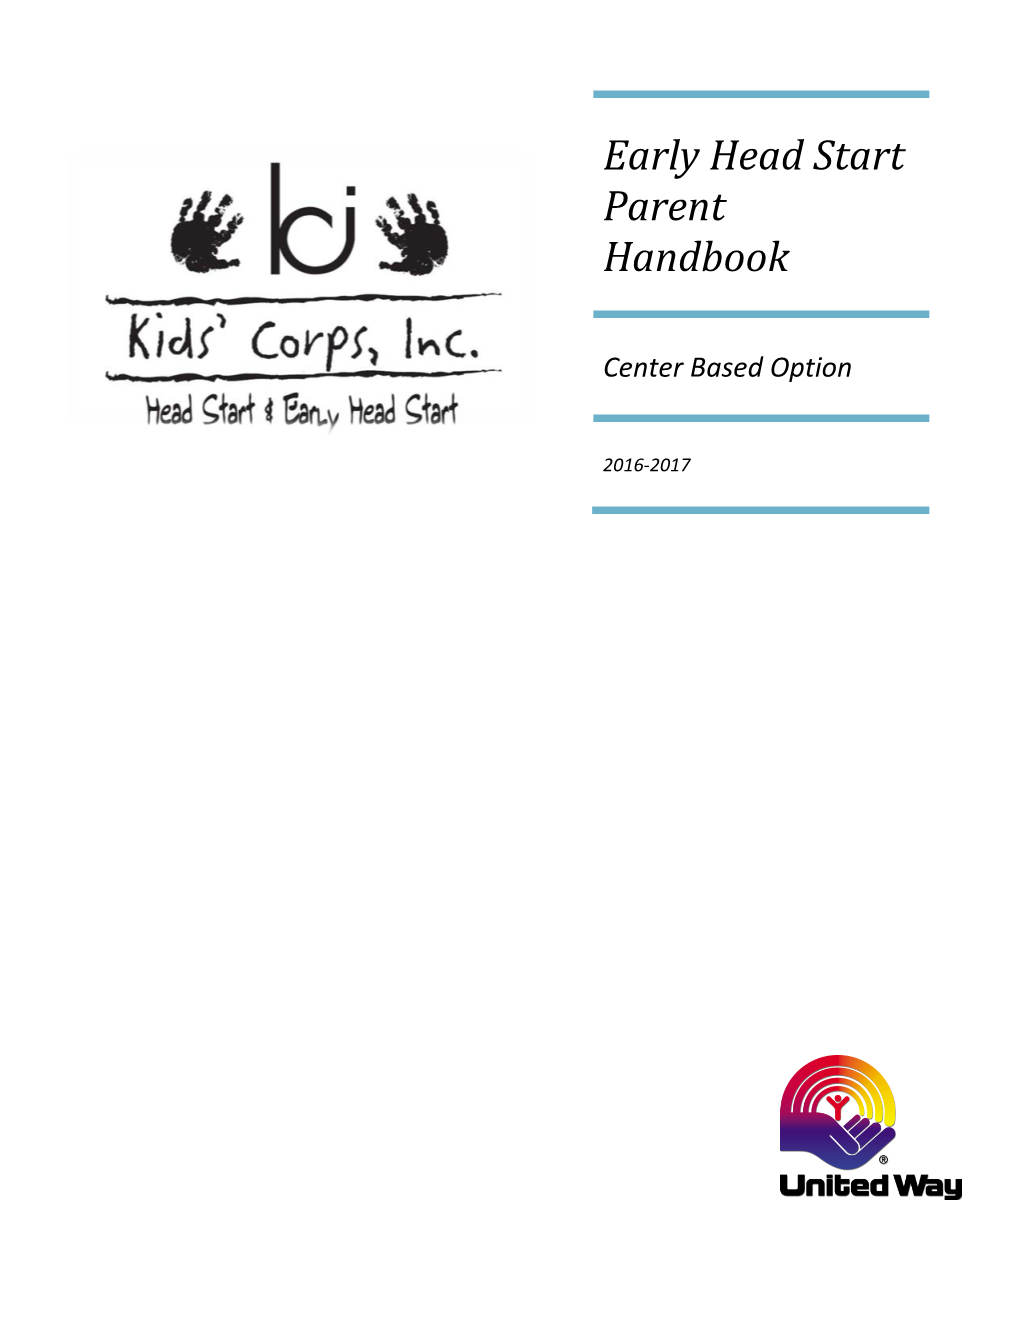 Early Head Start Parent Handbook